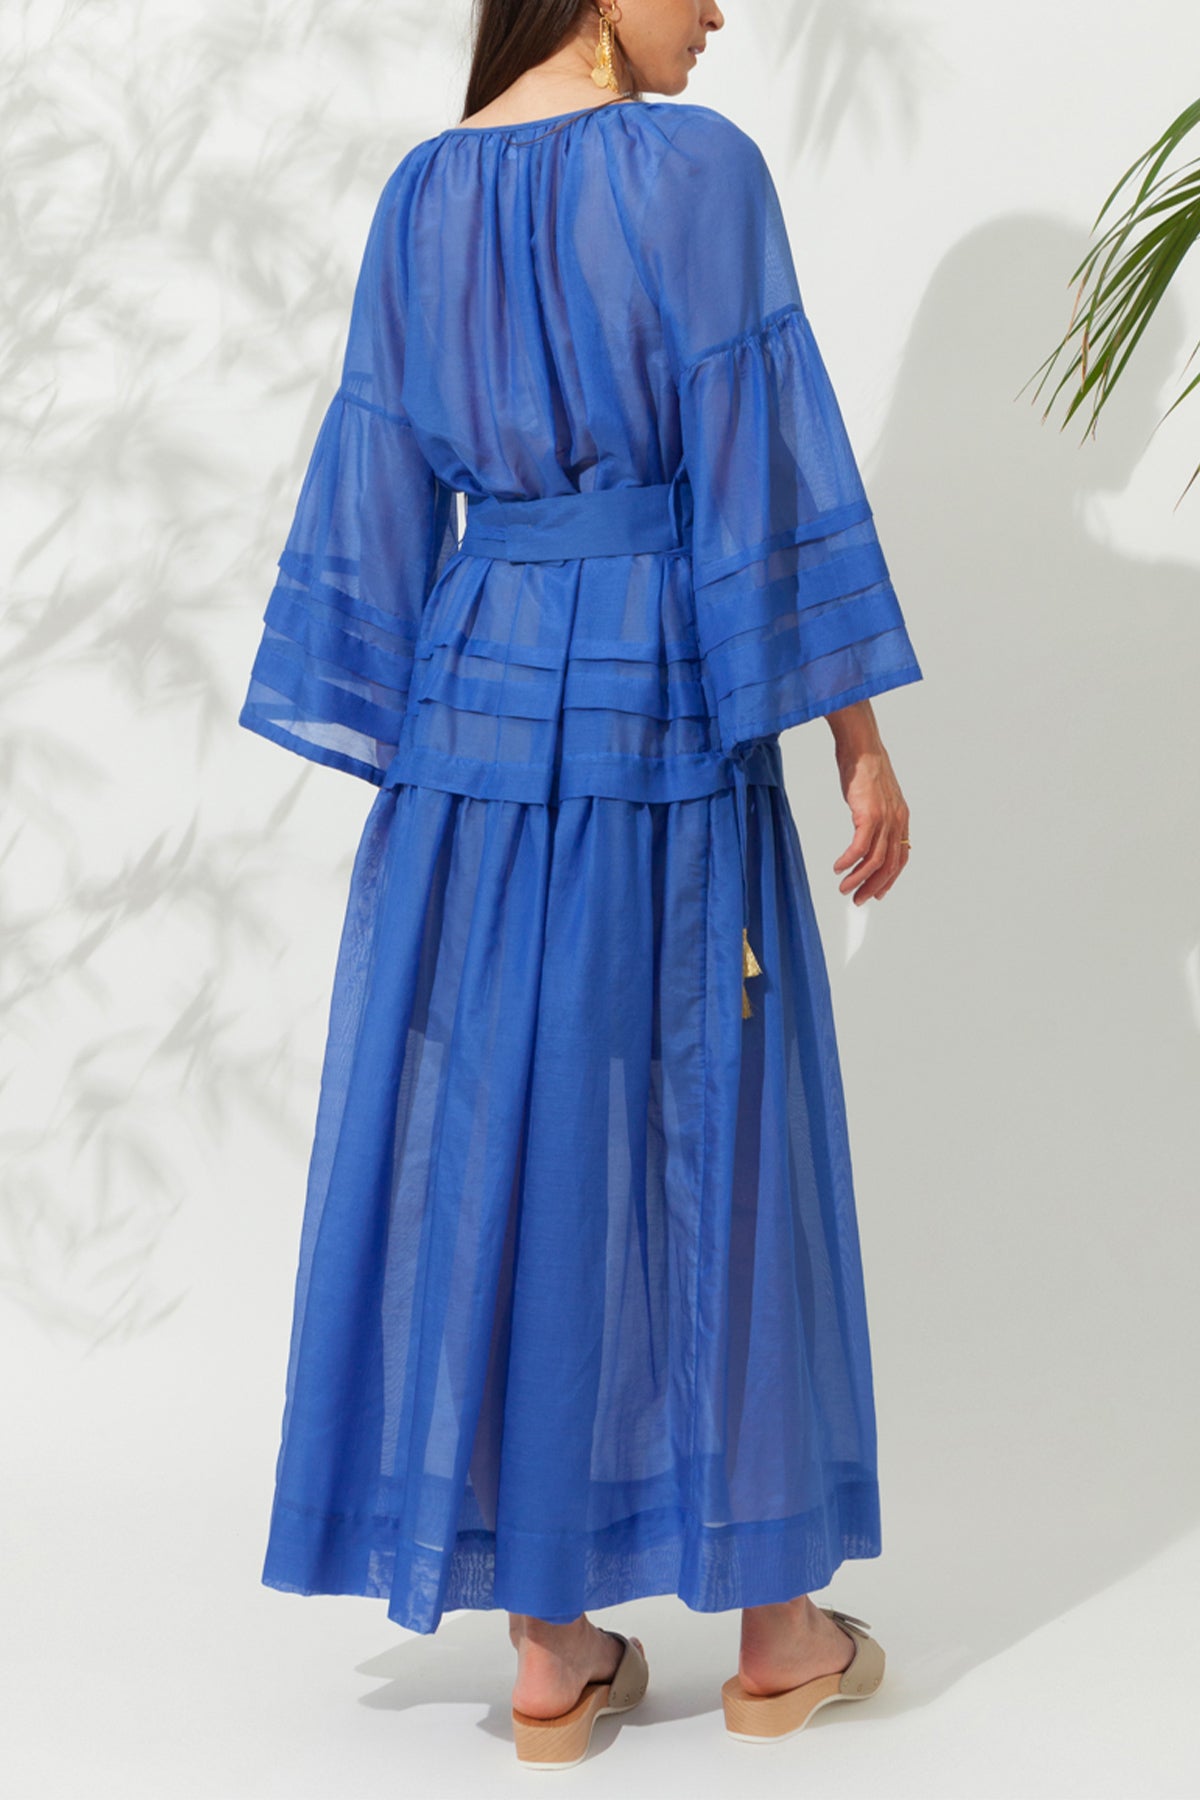 LONG SILK COTTON DRESS "MYKONOS" GREEK BLUE